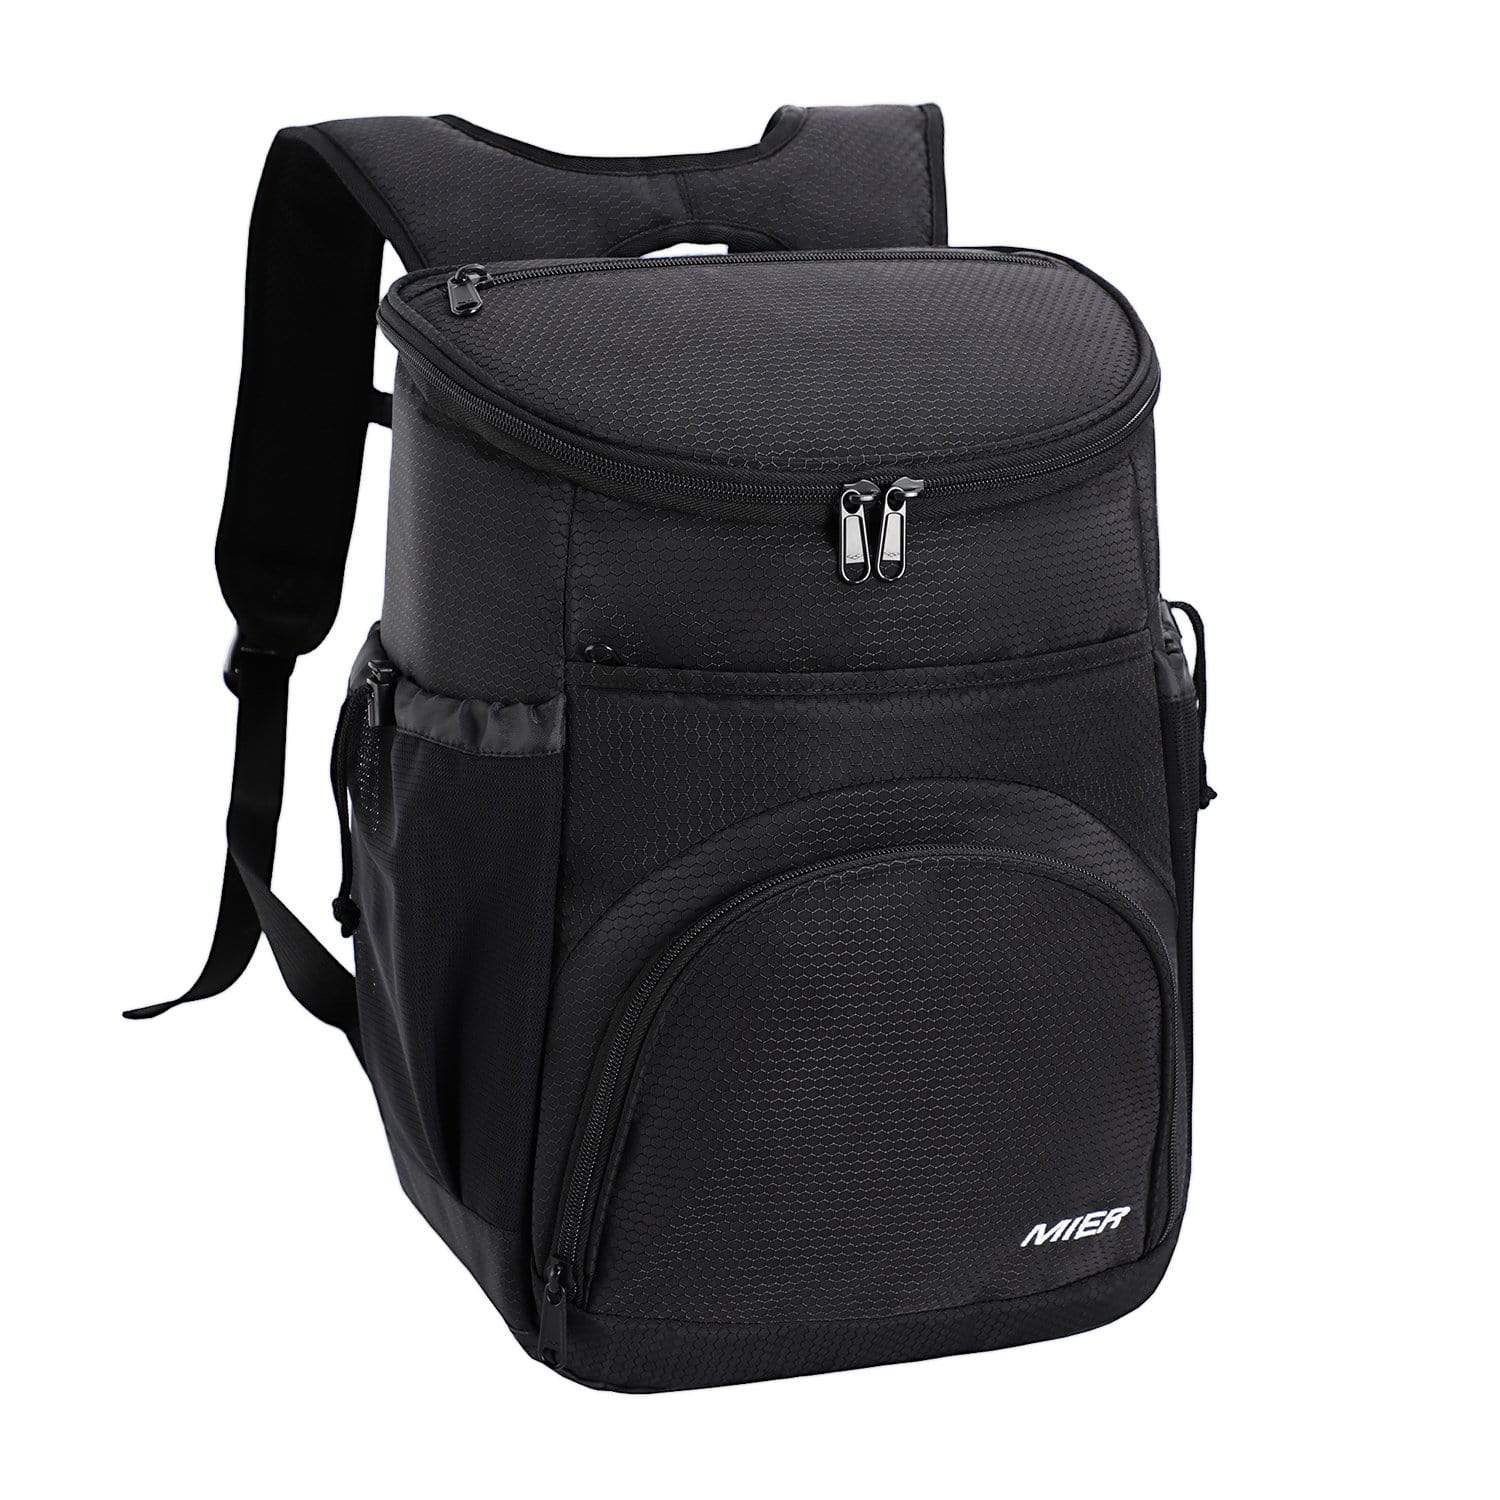 Insulated Cooler Backpack with Tablet Pocket, Leakproof Cooler Cooler Bag Black / PEVA liner MIER